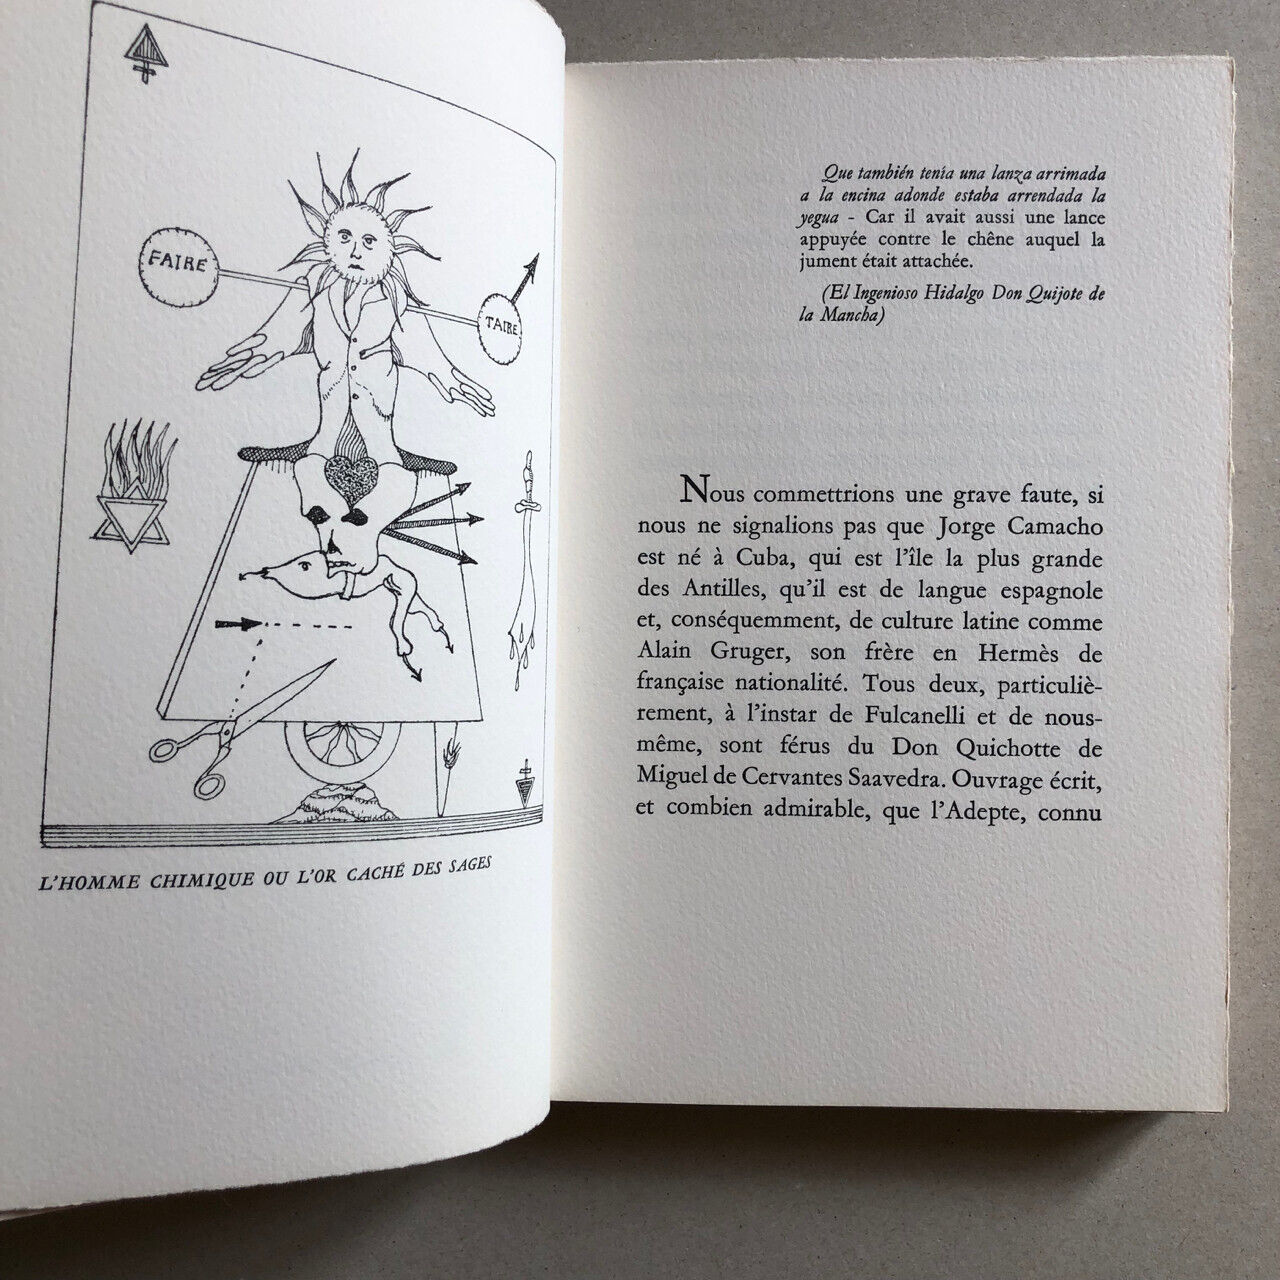 Camacho — New Alchemical Heraldry — ex. / Arches vellum — É. O. — 1978.